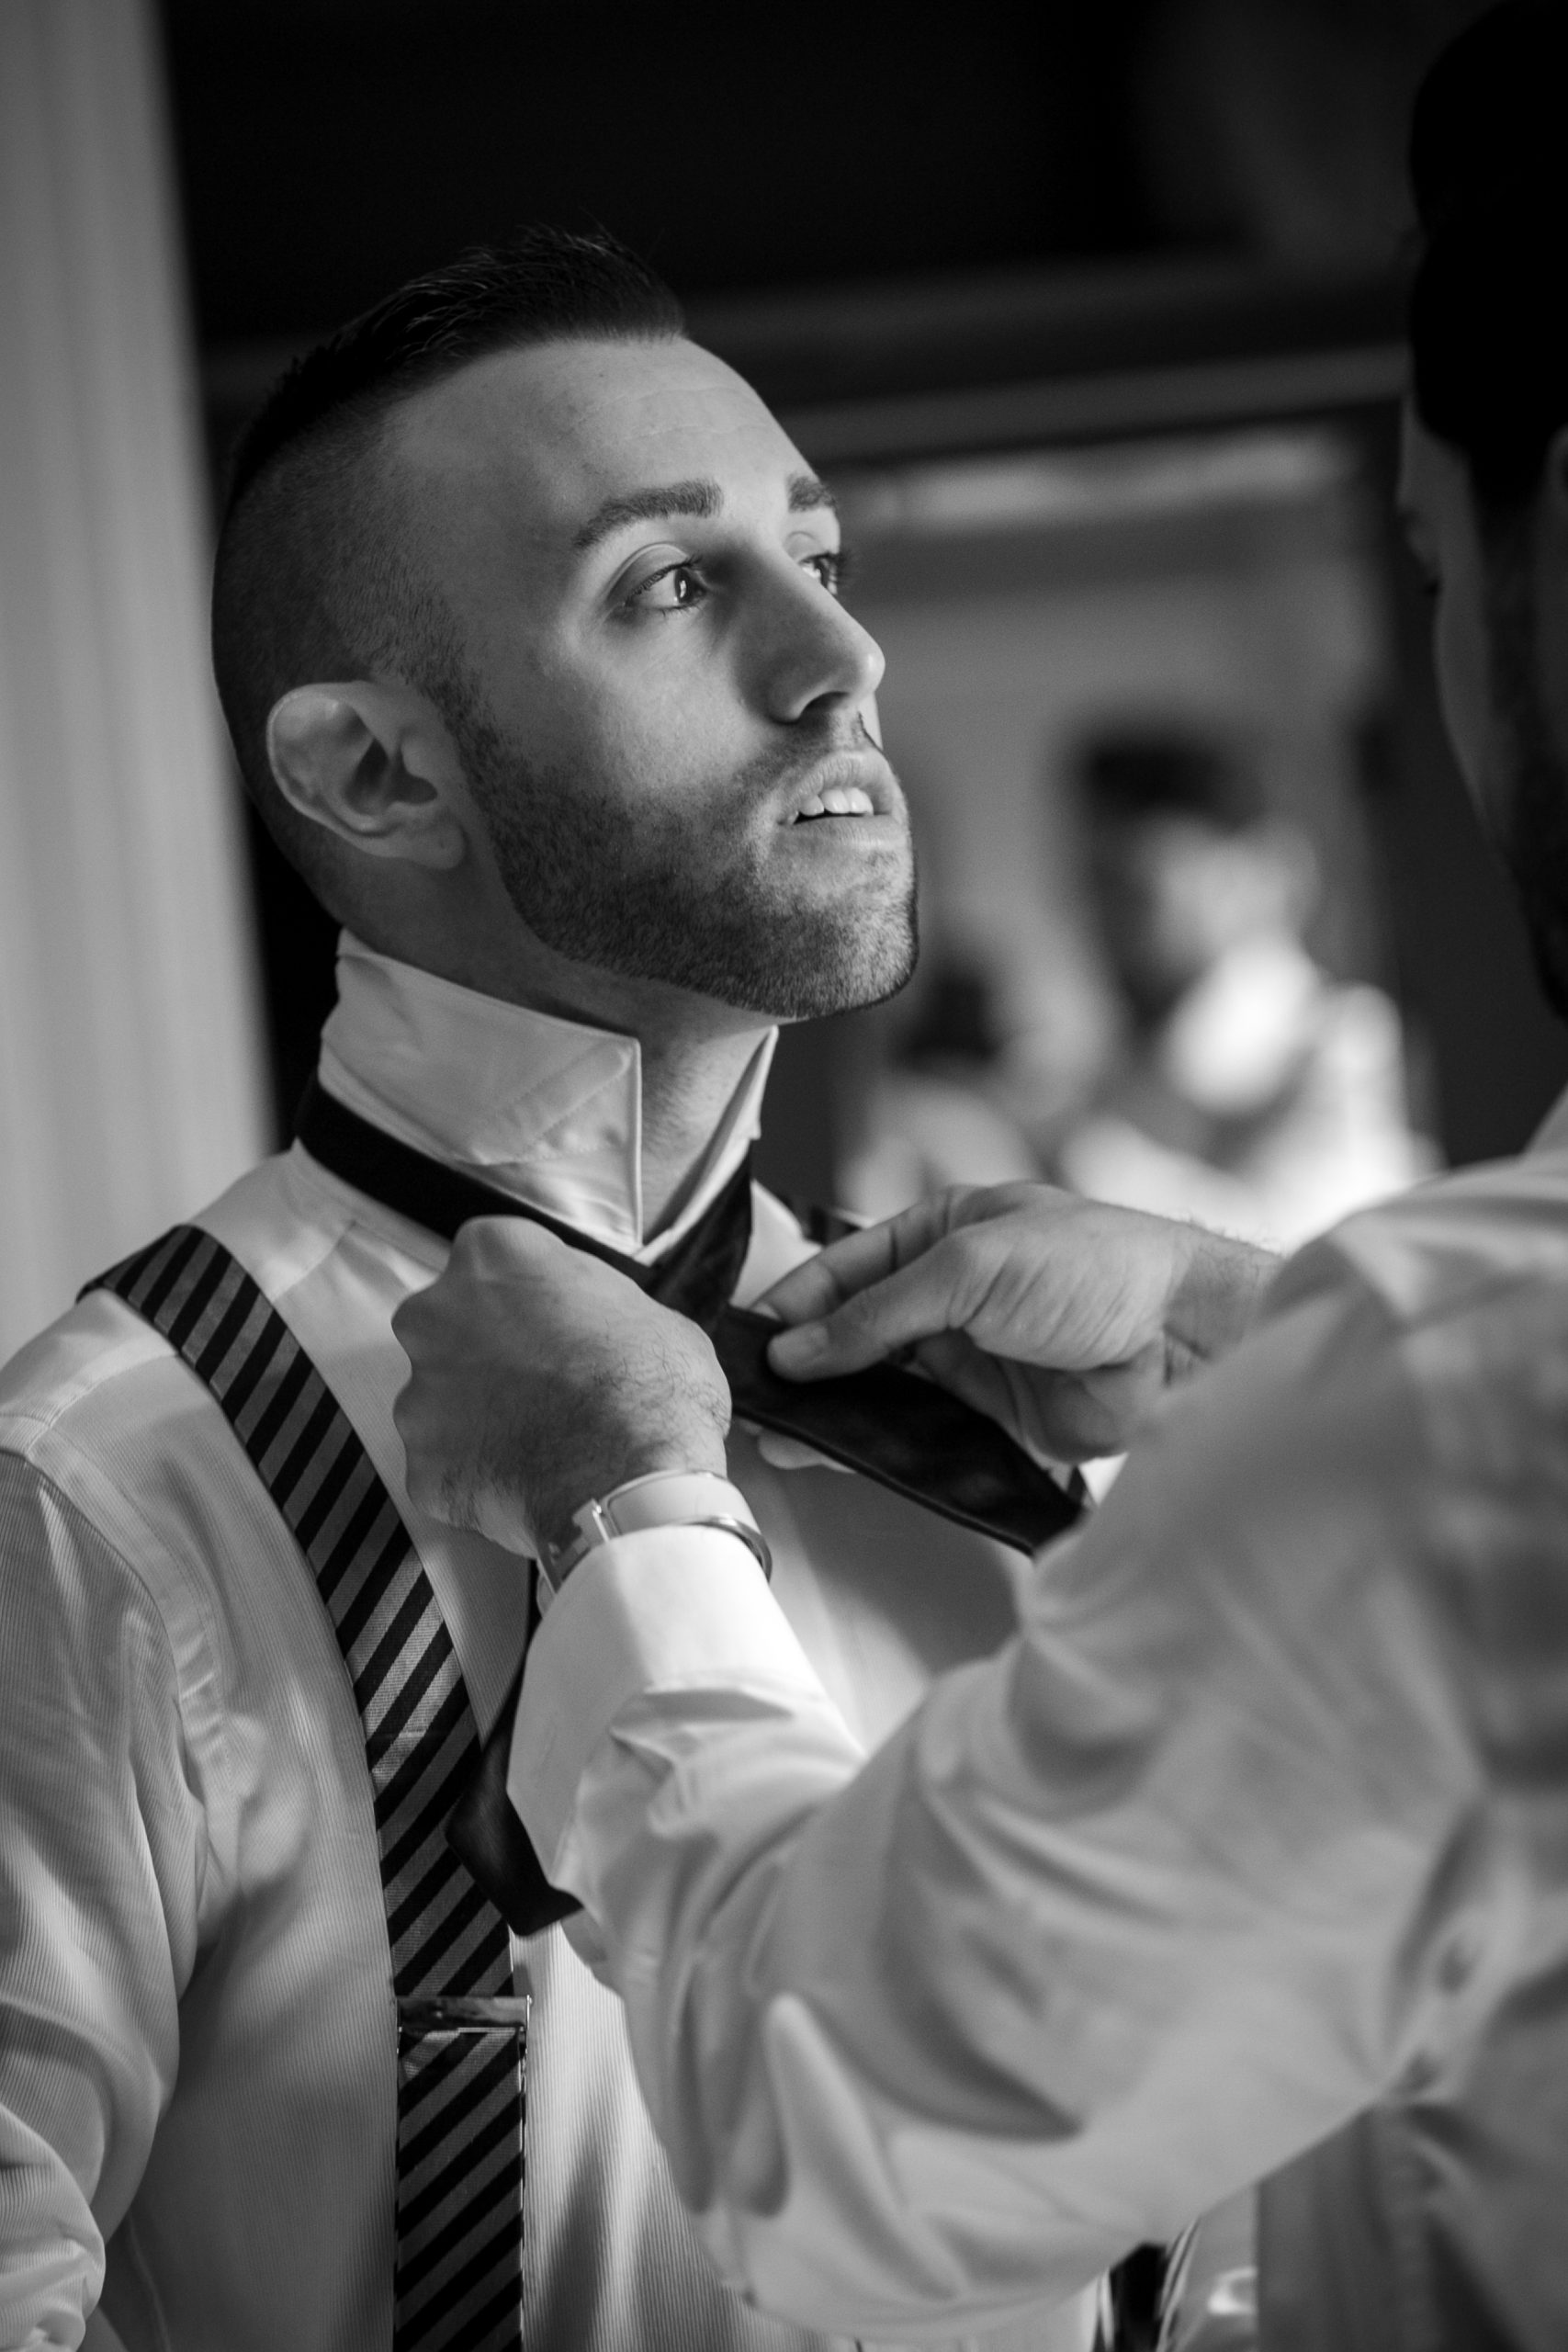 groom and groomsmen tie bowties in the mirror